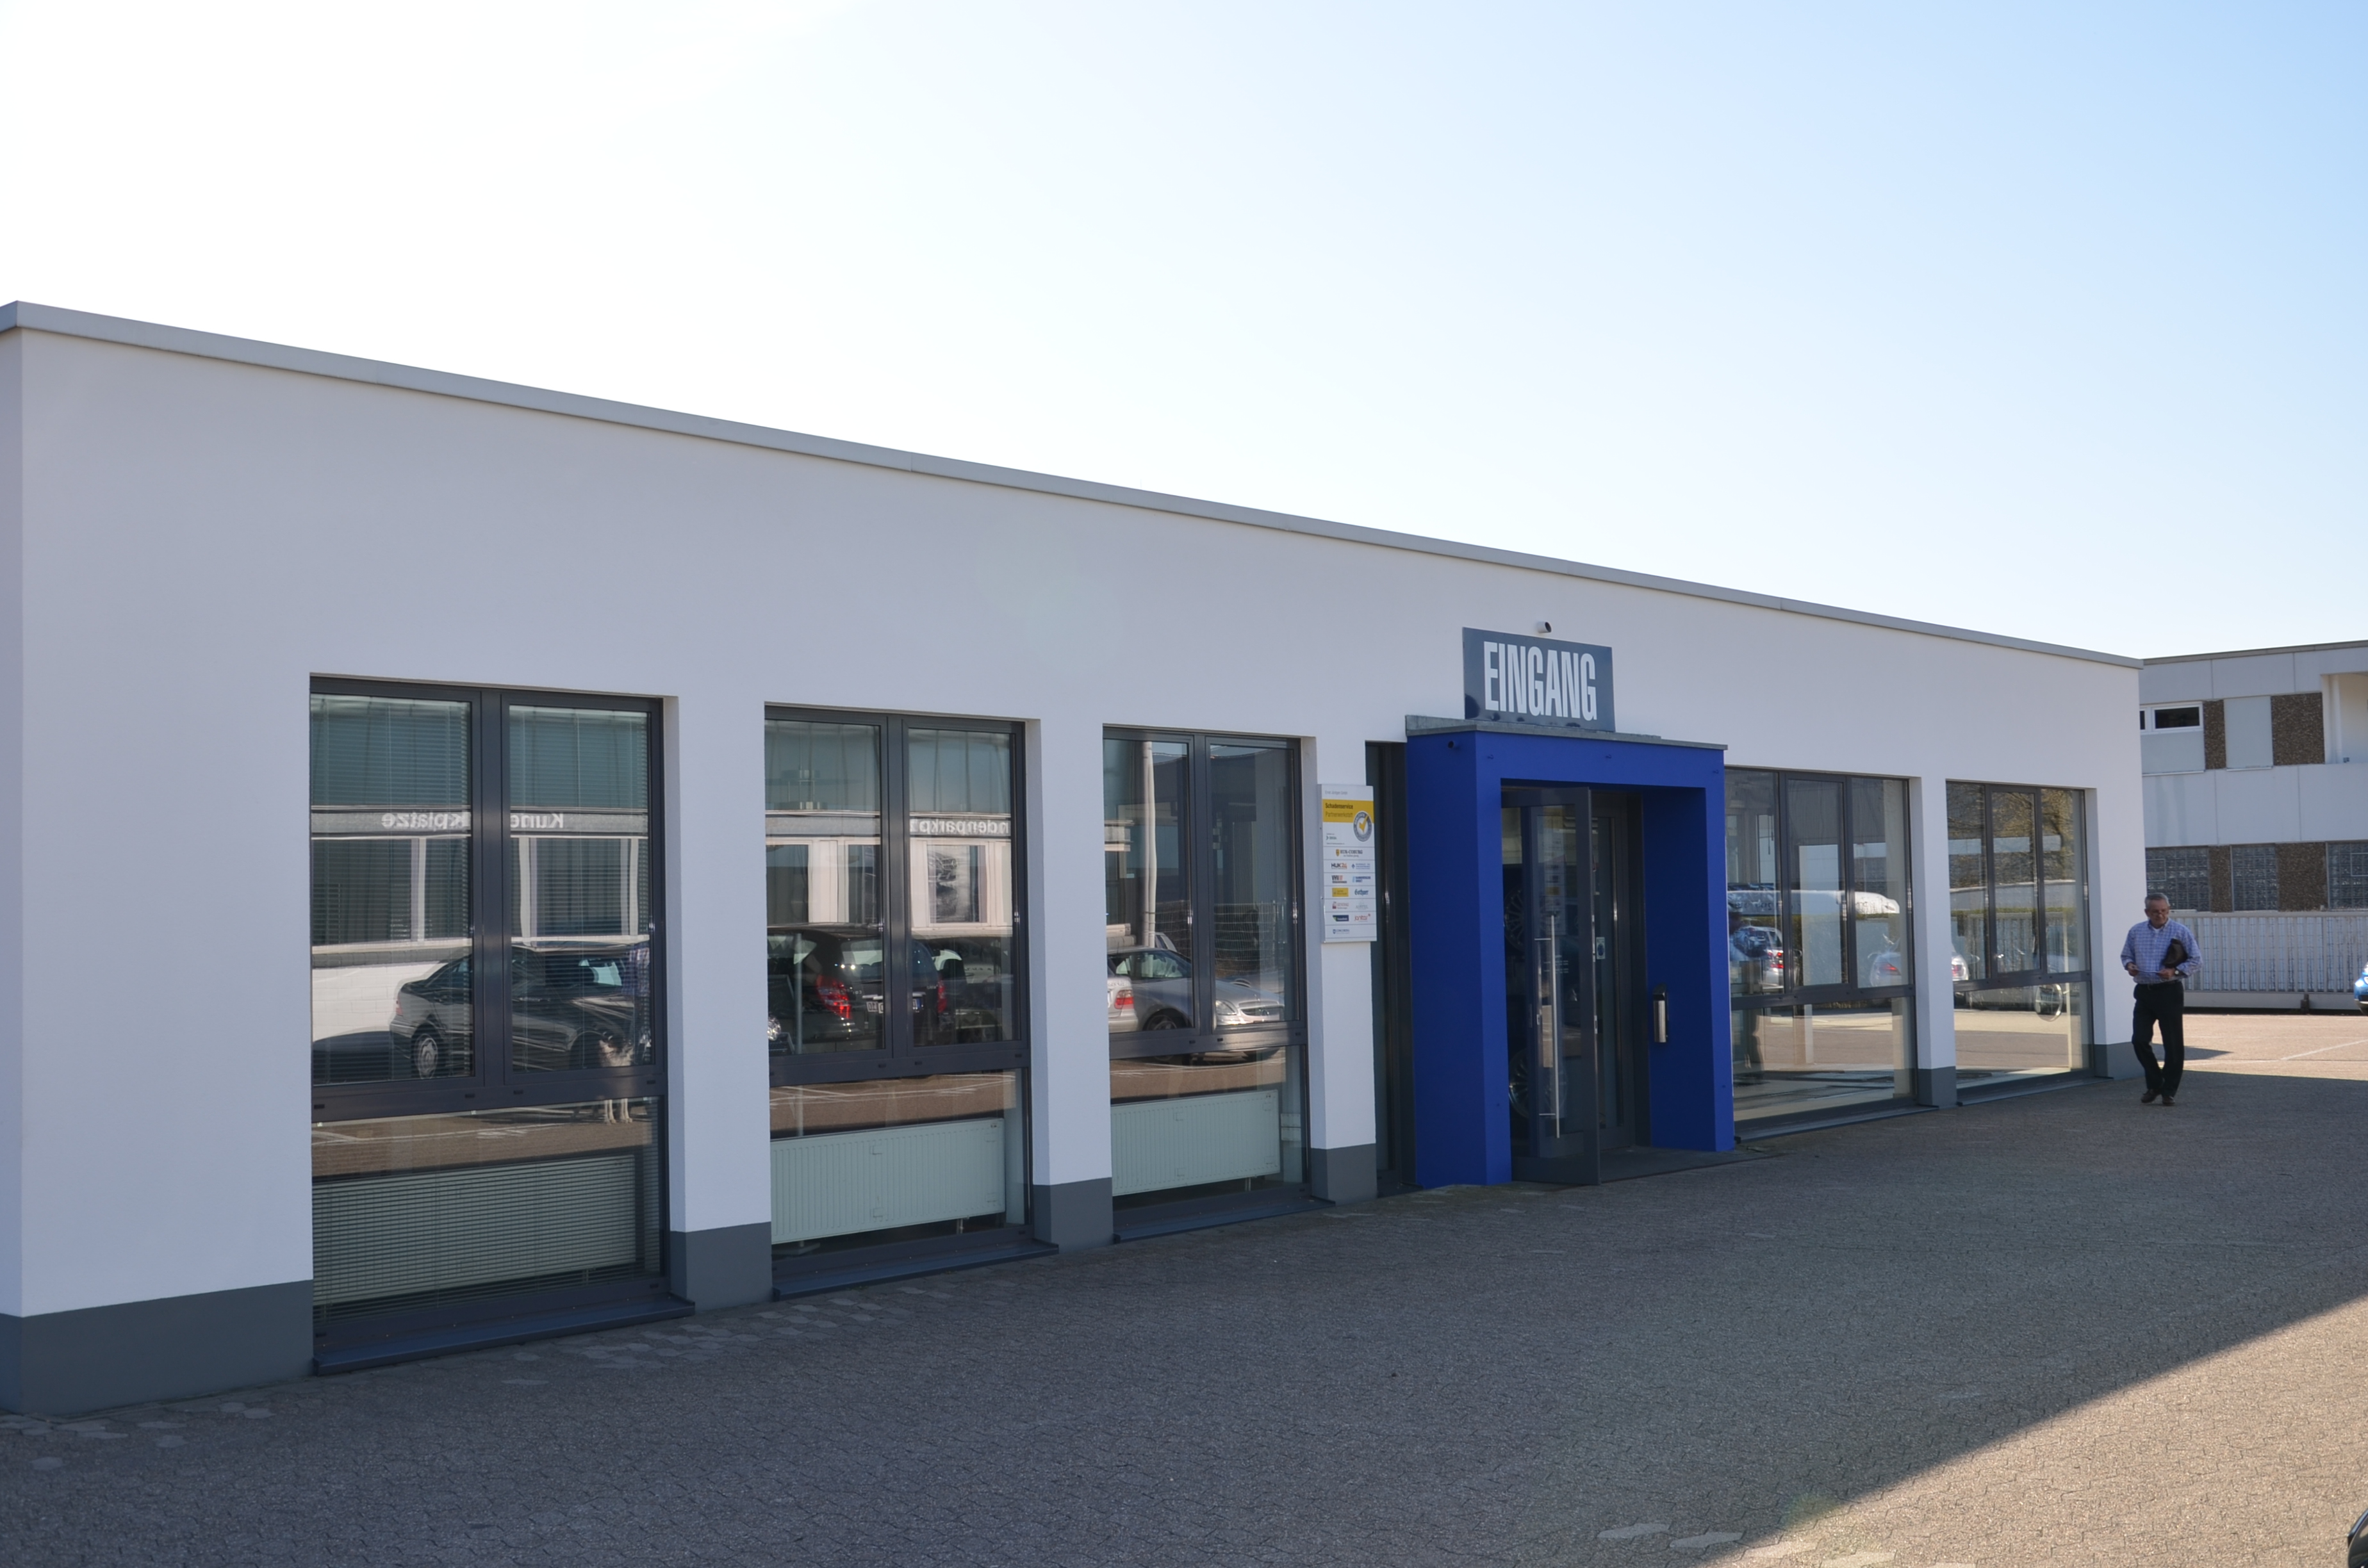 Tretten Sie ein!
Hier sehen Sie den Eingang der Ernst J&uuml;ntgen GmbH!